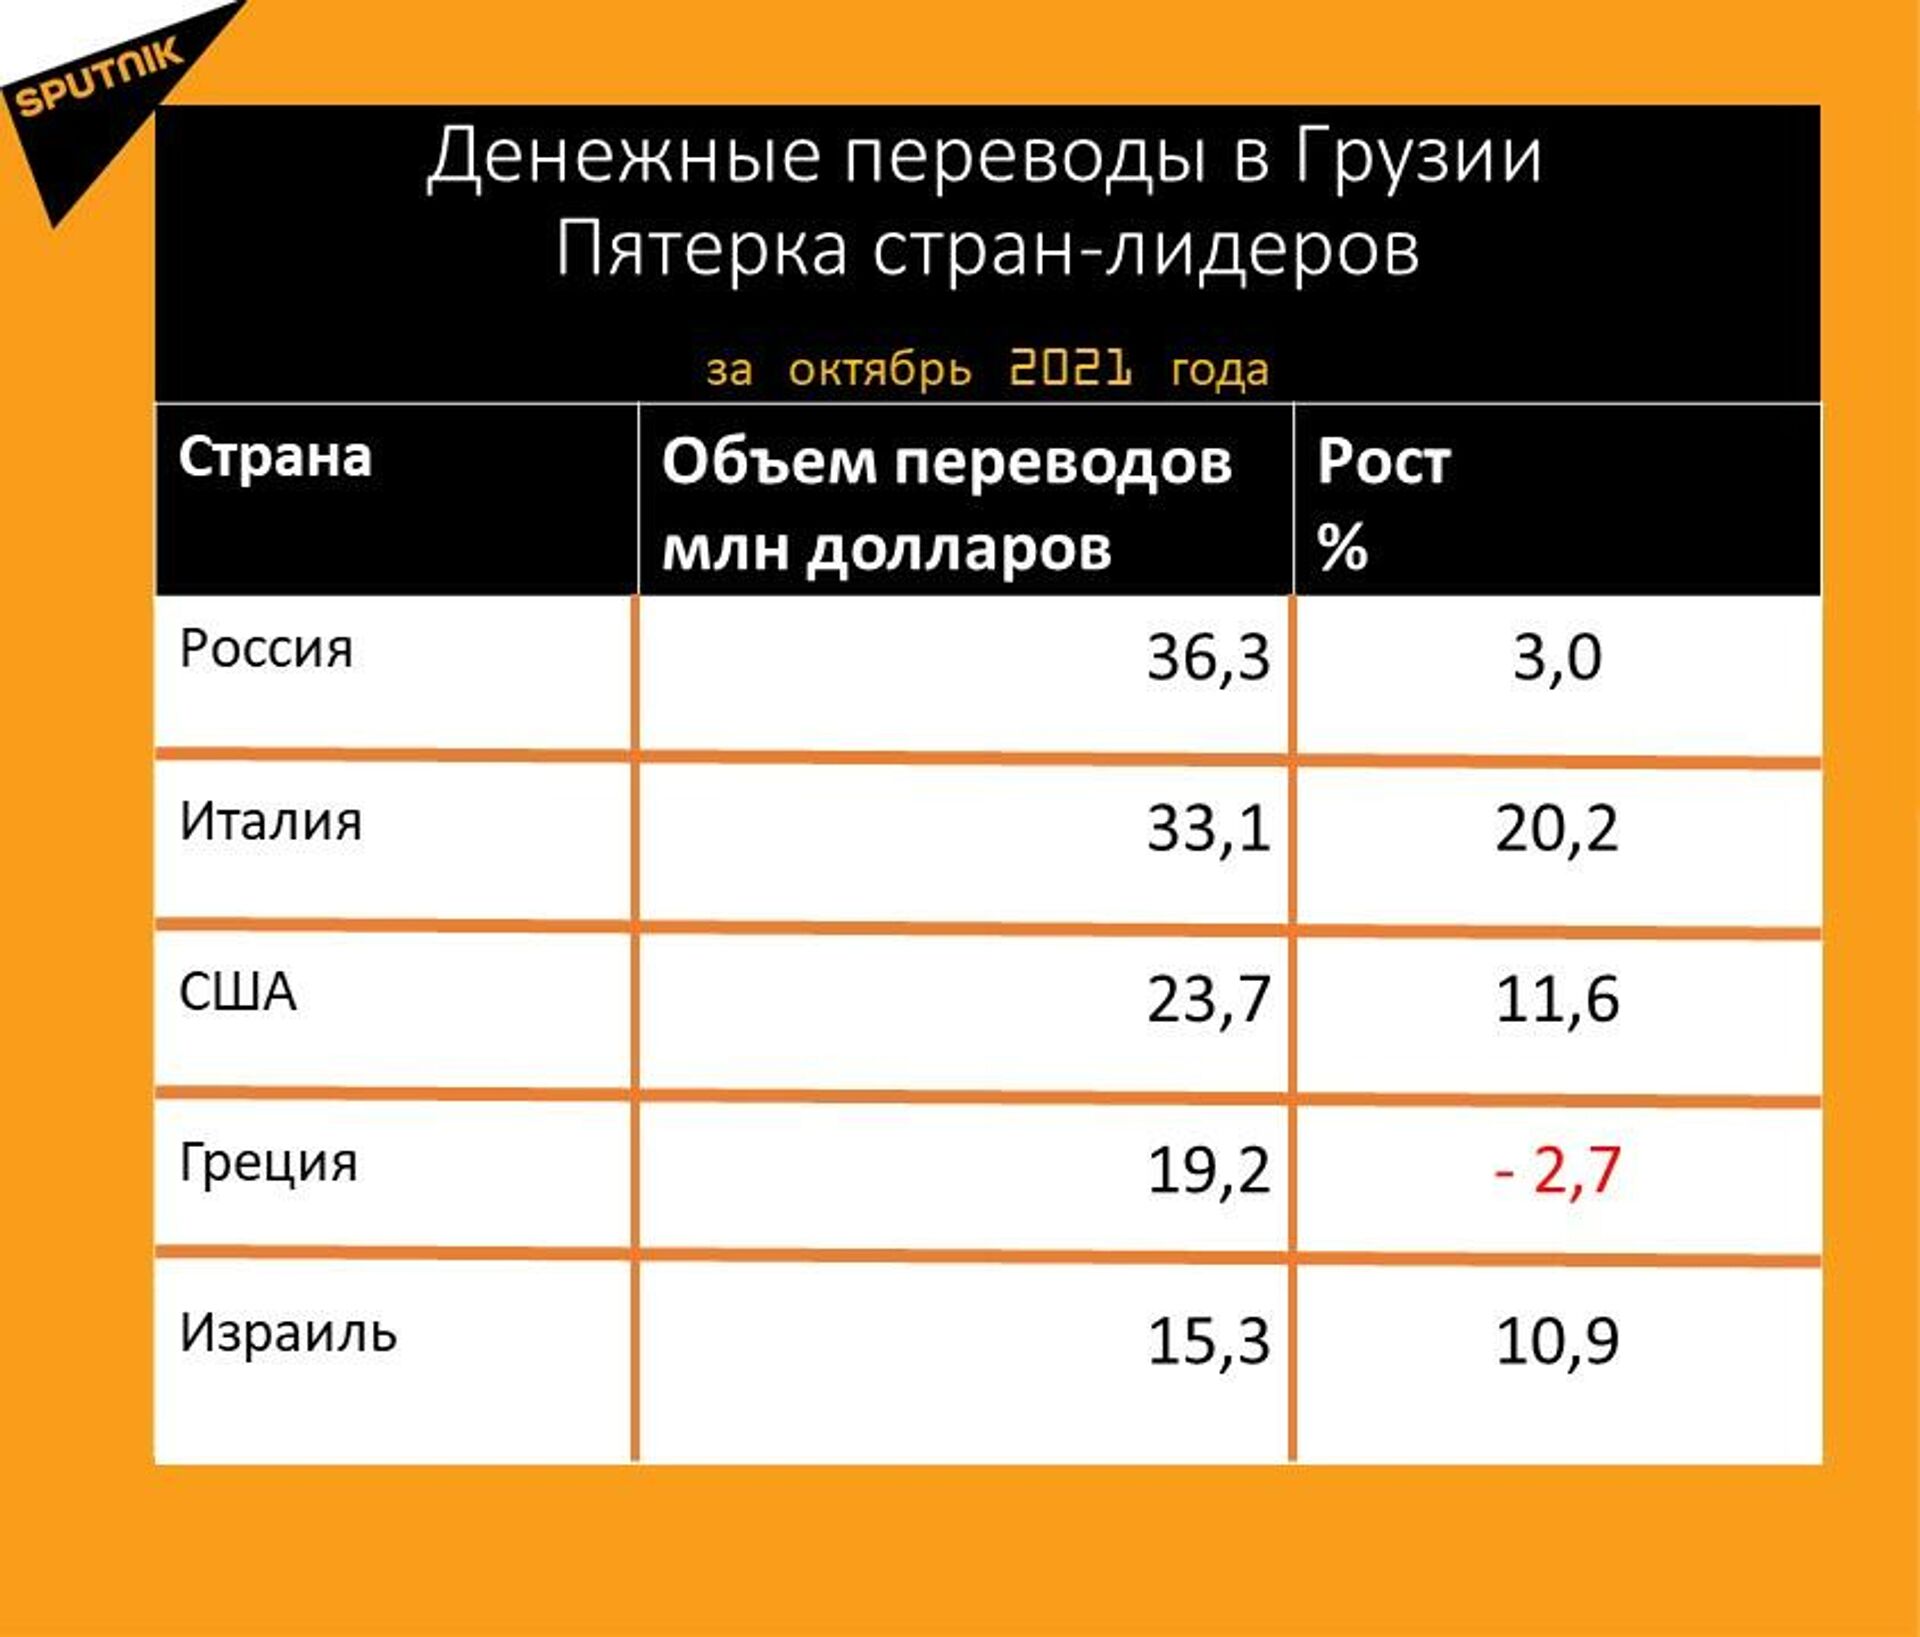 Статистика денежных переводов в Грузию за октябрь 2021 года - Sputnik Грузия, 1920, 17.11.2021